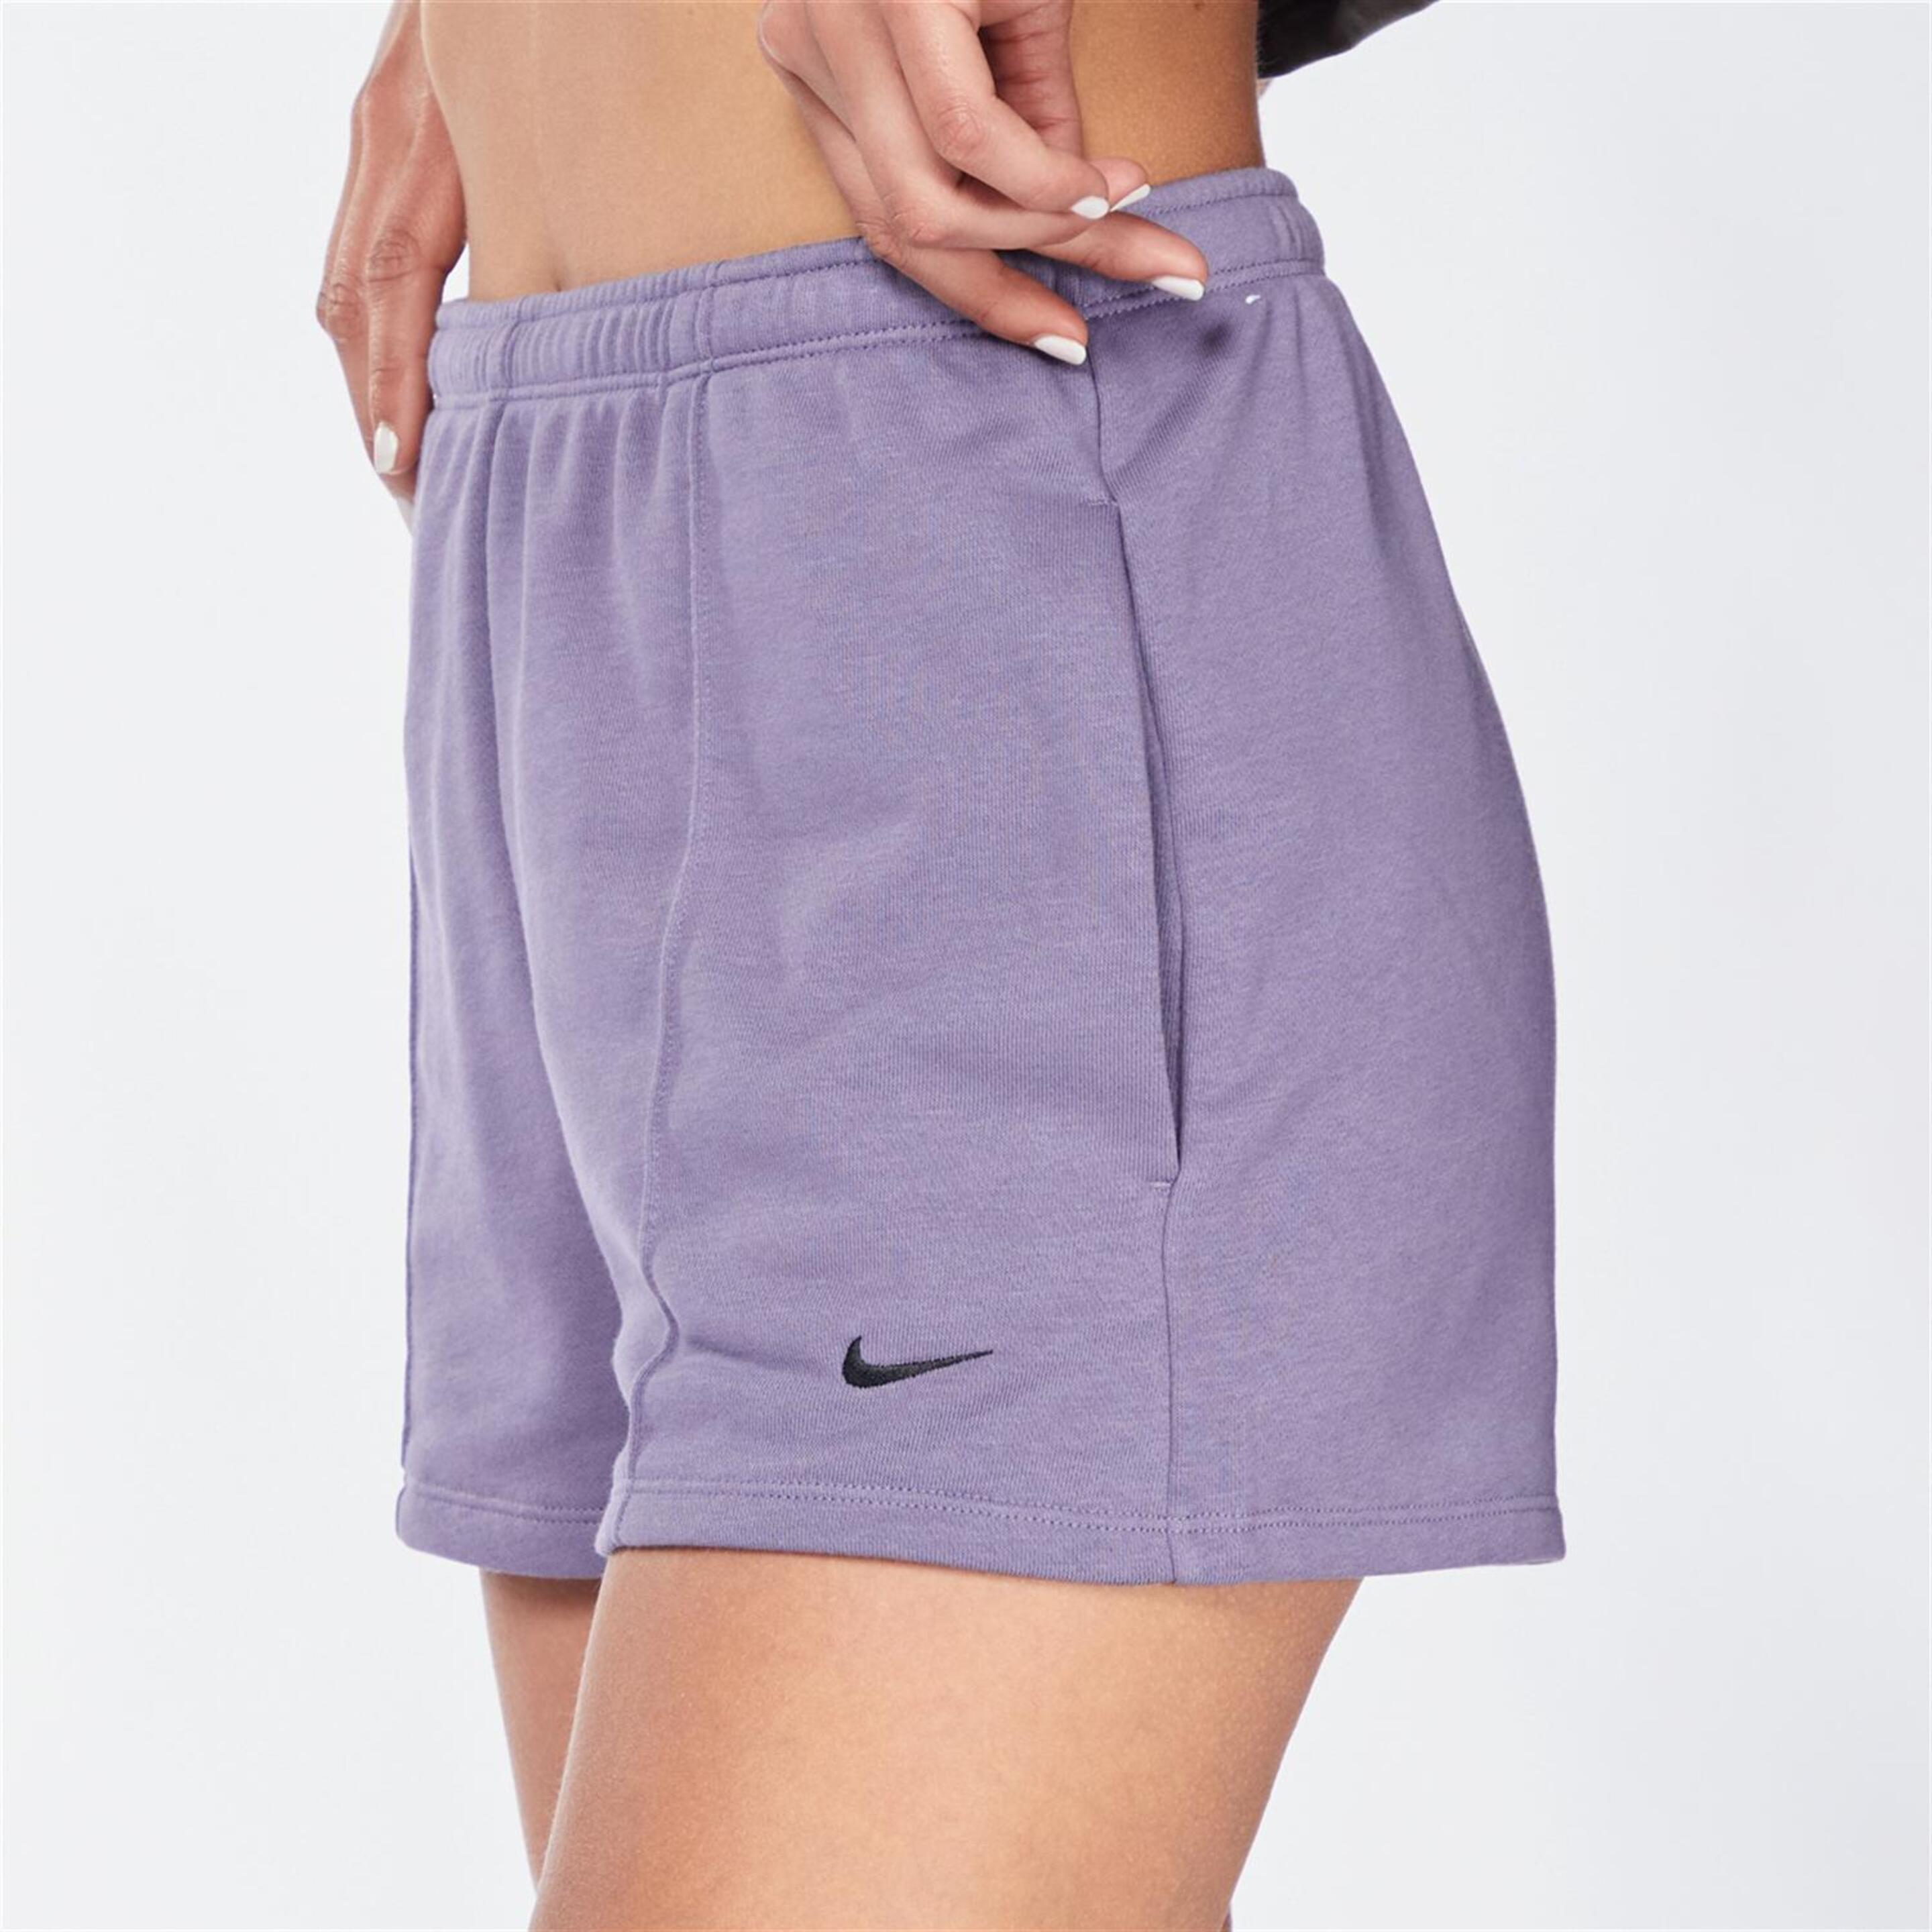 Pantalón Nike - morado - Short Mujer